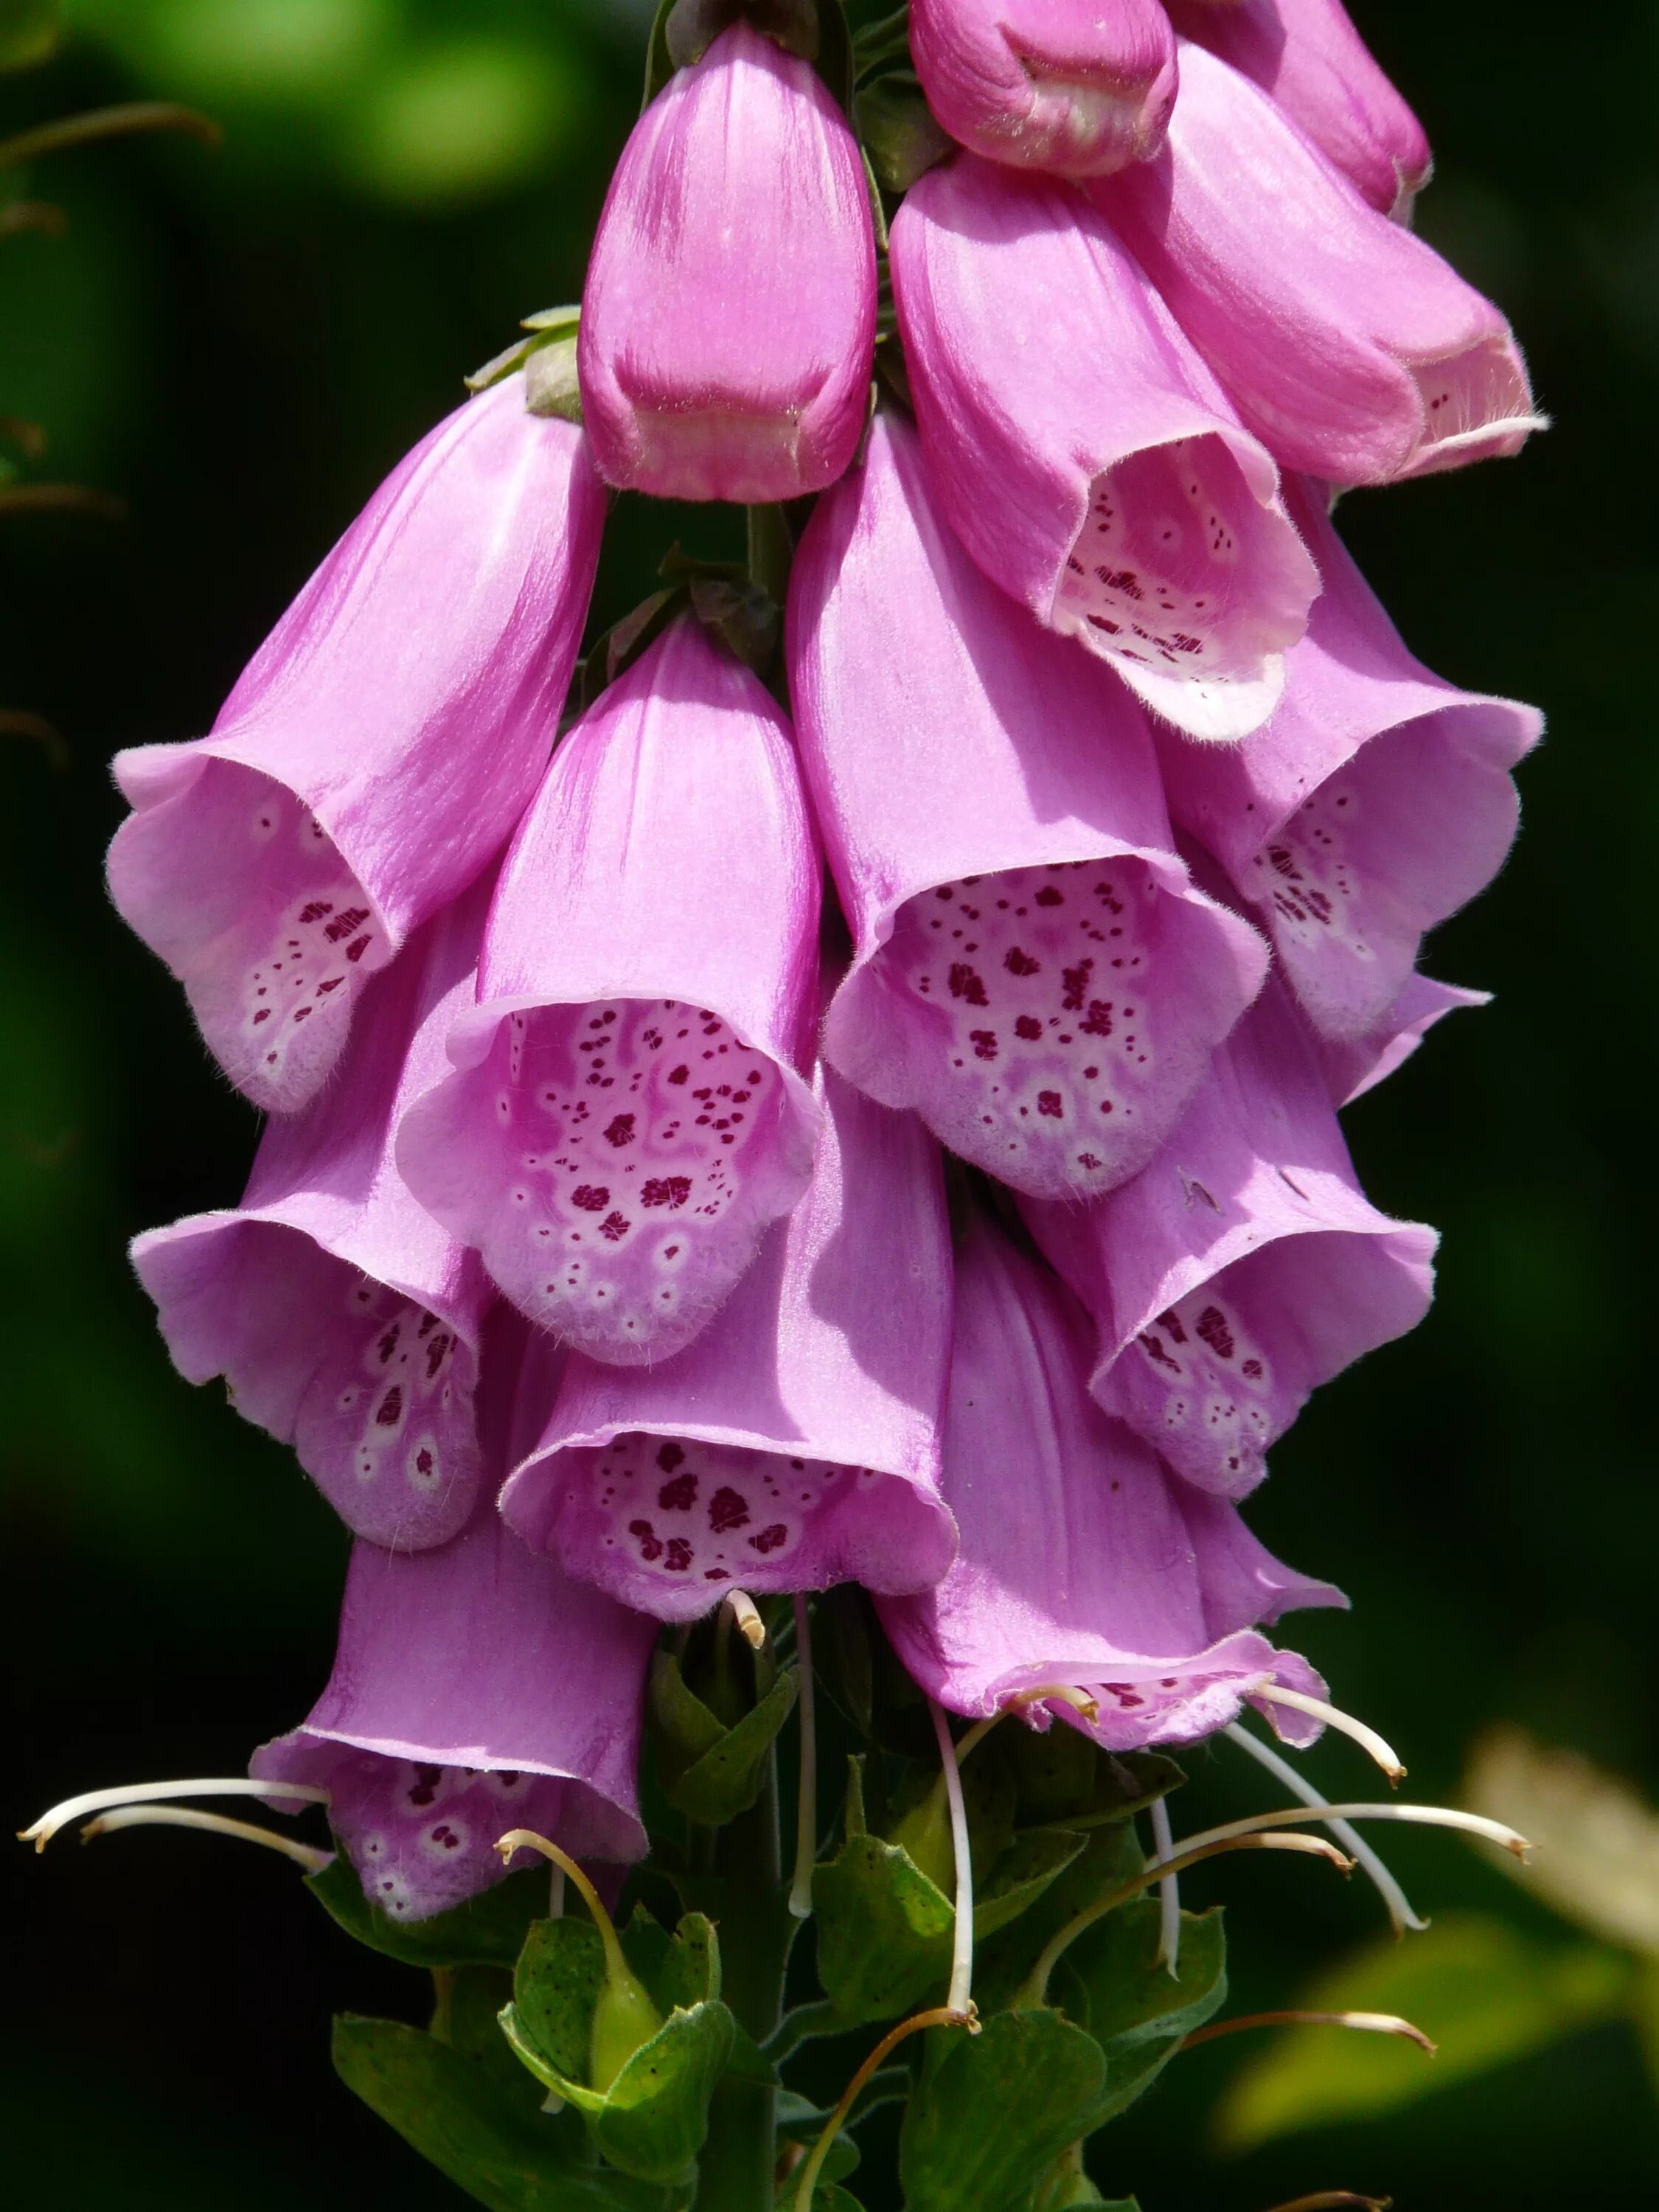 Poisonous flower. Дигиталис наперстянка. Наперстянка пурпуровая. Наперстянка пурпуровая (digitalis purpurea). Наперстянка красная (пурпуровая).